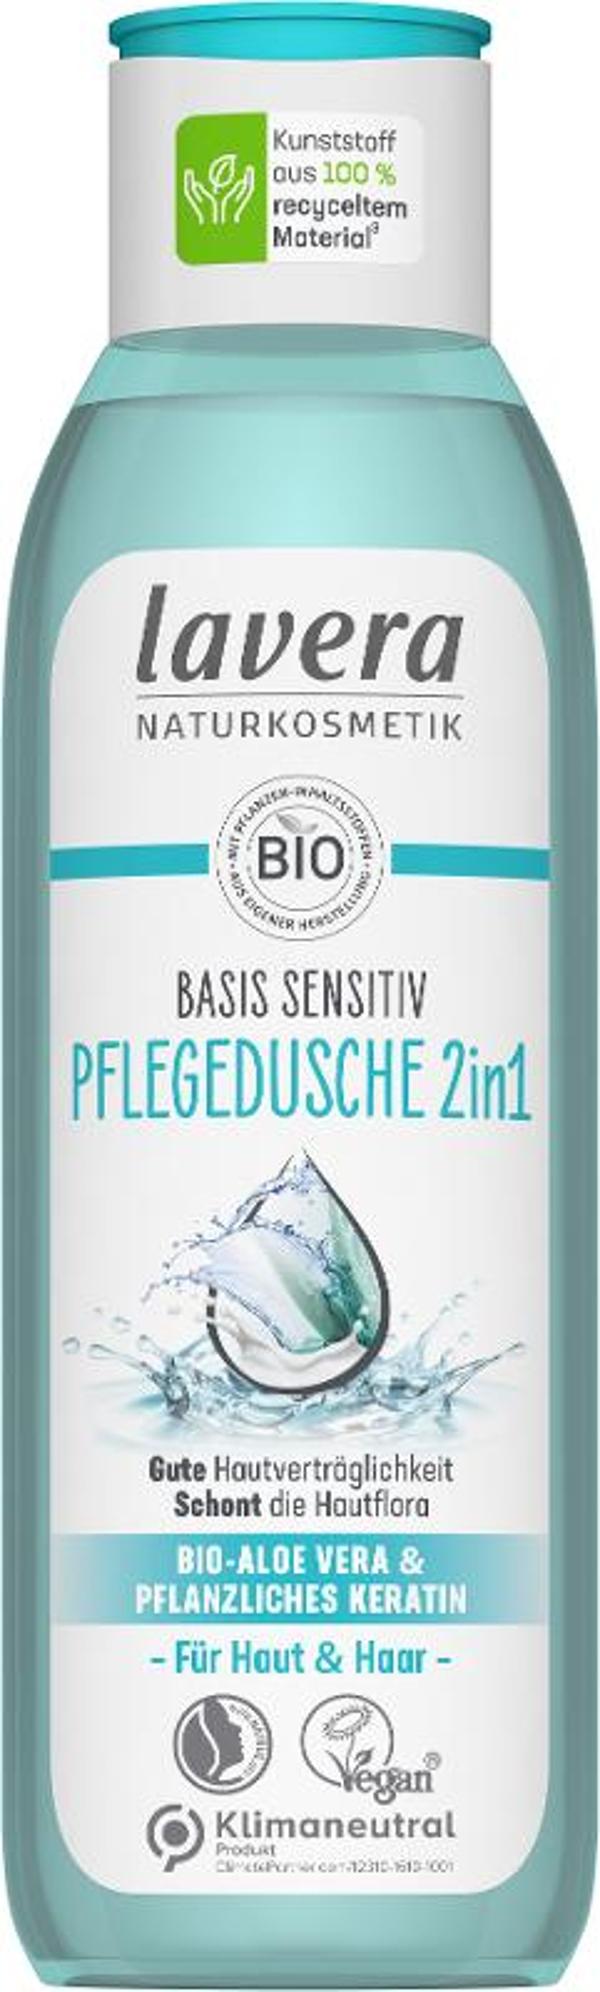 Produktfoto zu Basis sensitiv Pflegedusche 2in1, 250 ml